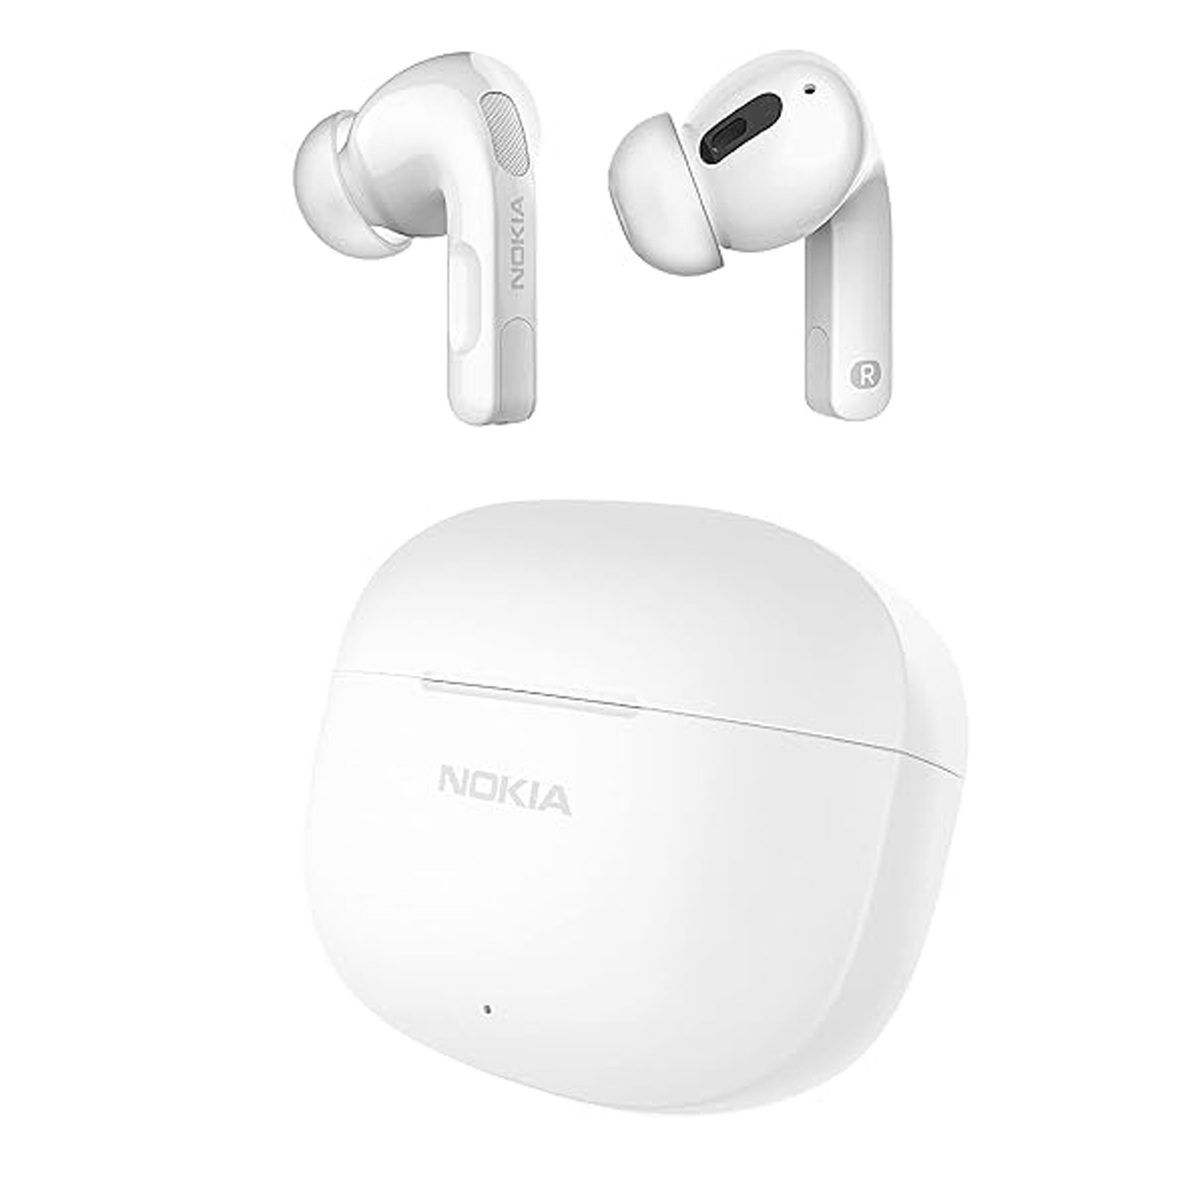 Nokia Go In-Ear True Wireless Noise Cancelling Earbuds2 Pro, White, TWS-222